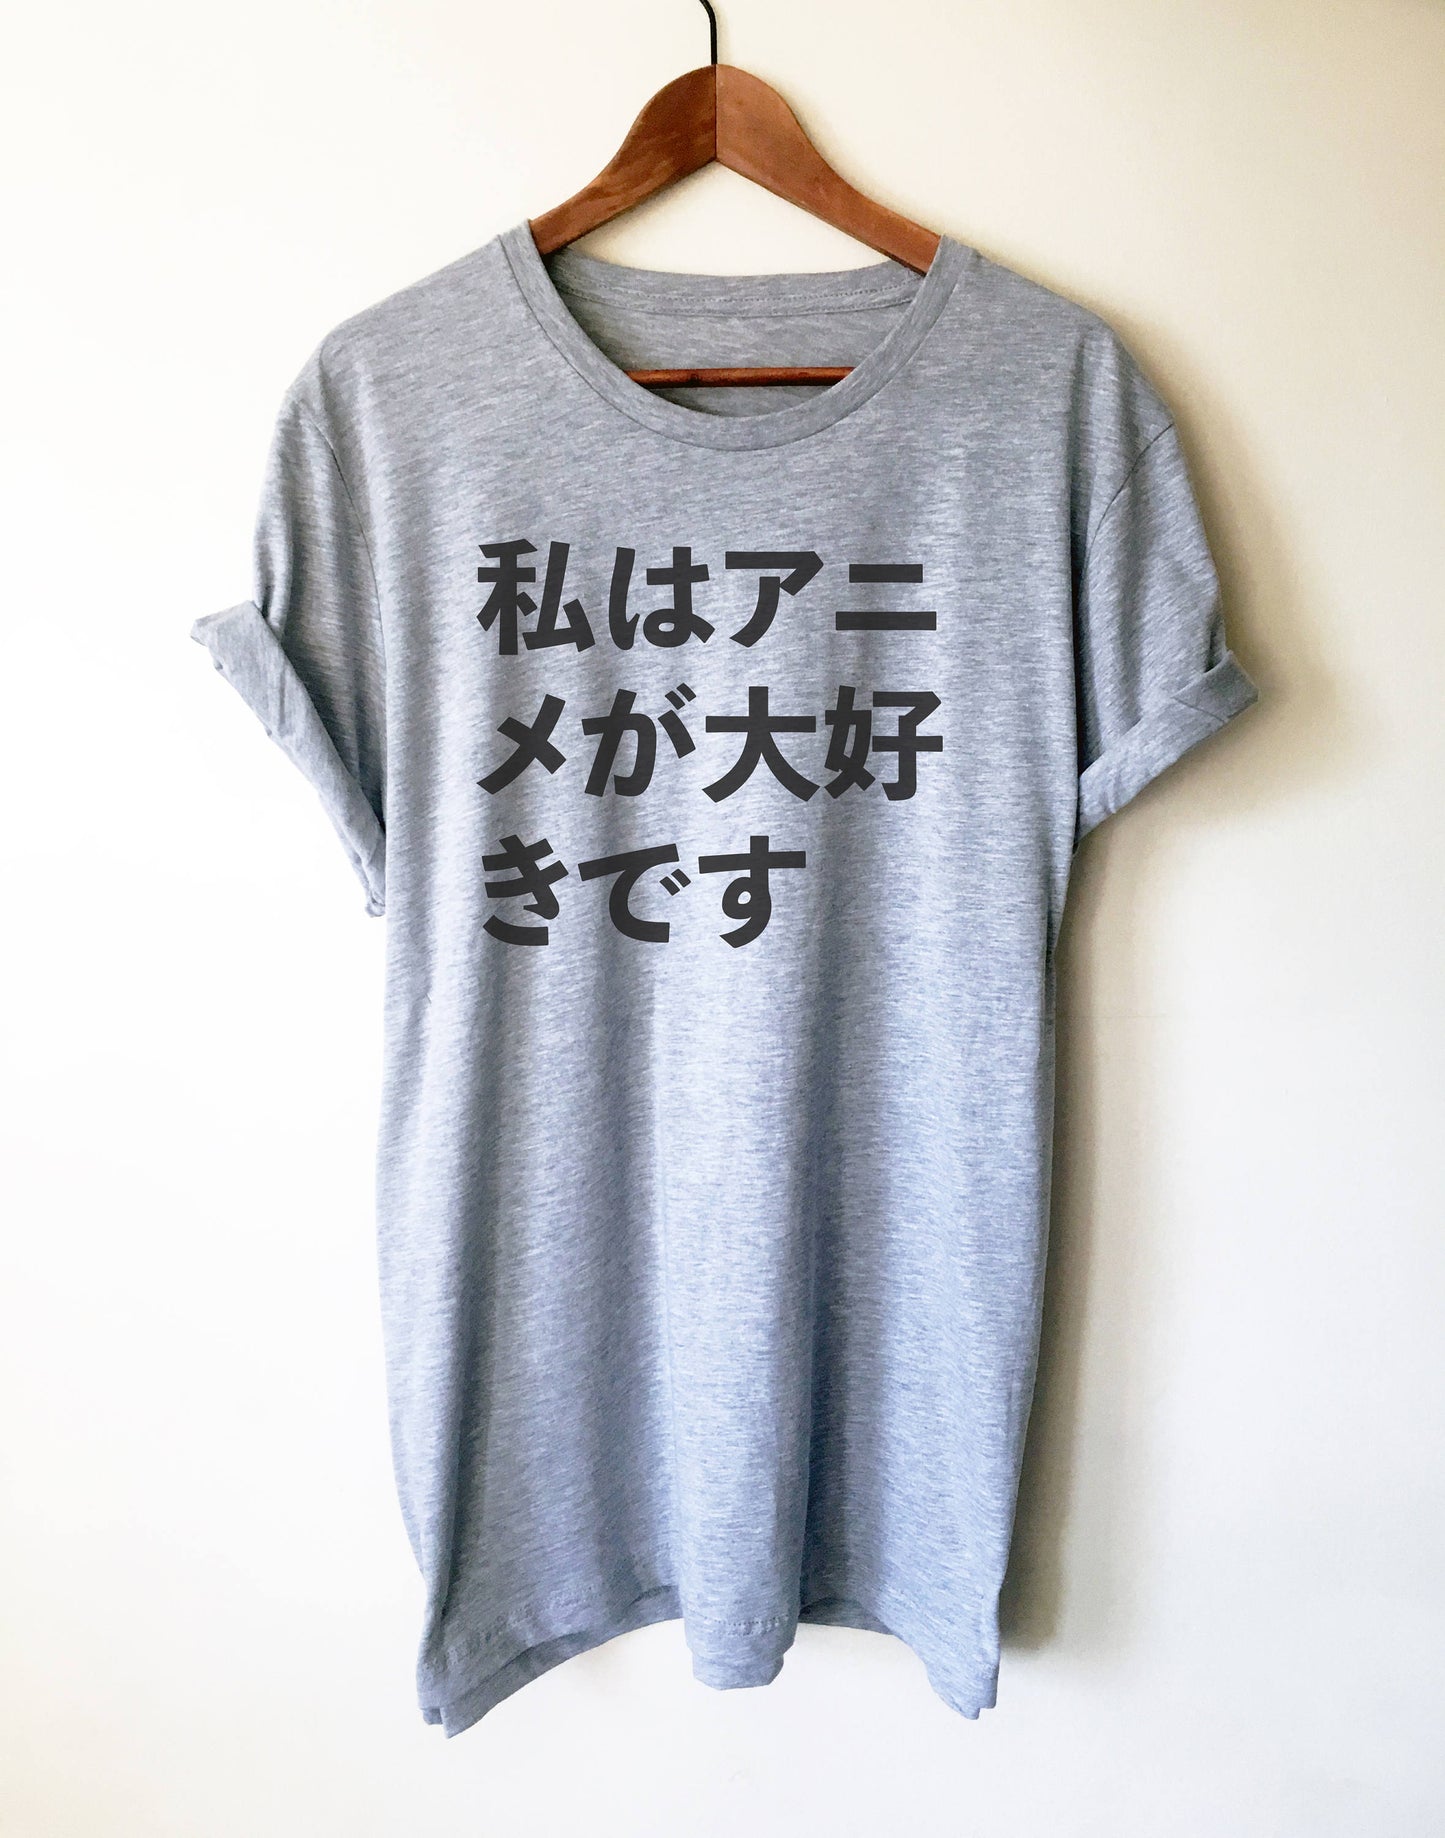 I Love Anime in Japanese Unisex Shirt - Anime shirt, Manga shirt, Anime shirts, Anime gift, Anime gifts, Japanese shirt, Otaku shirt